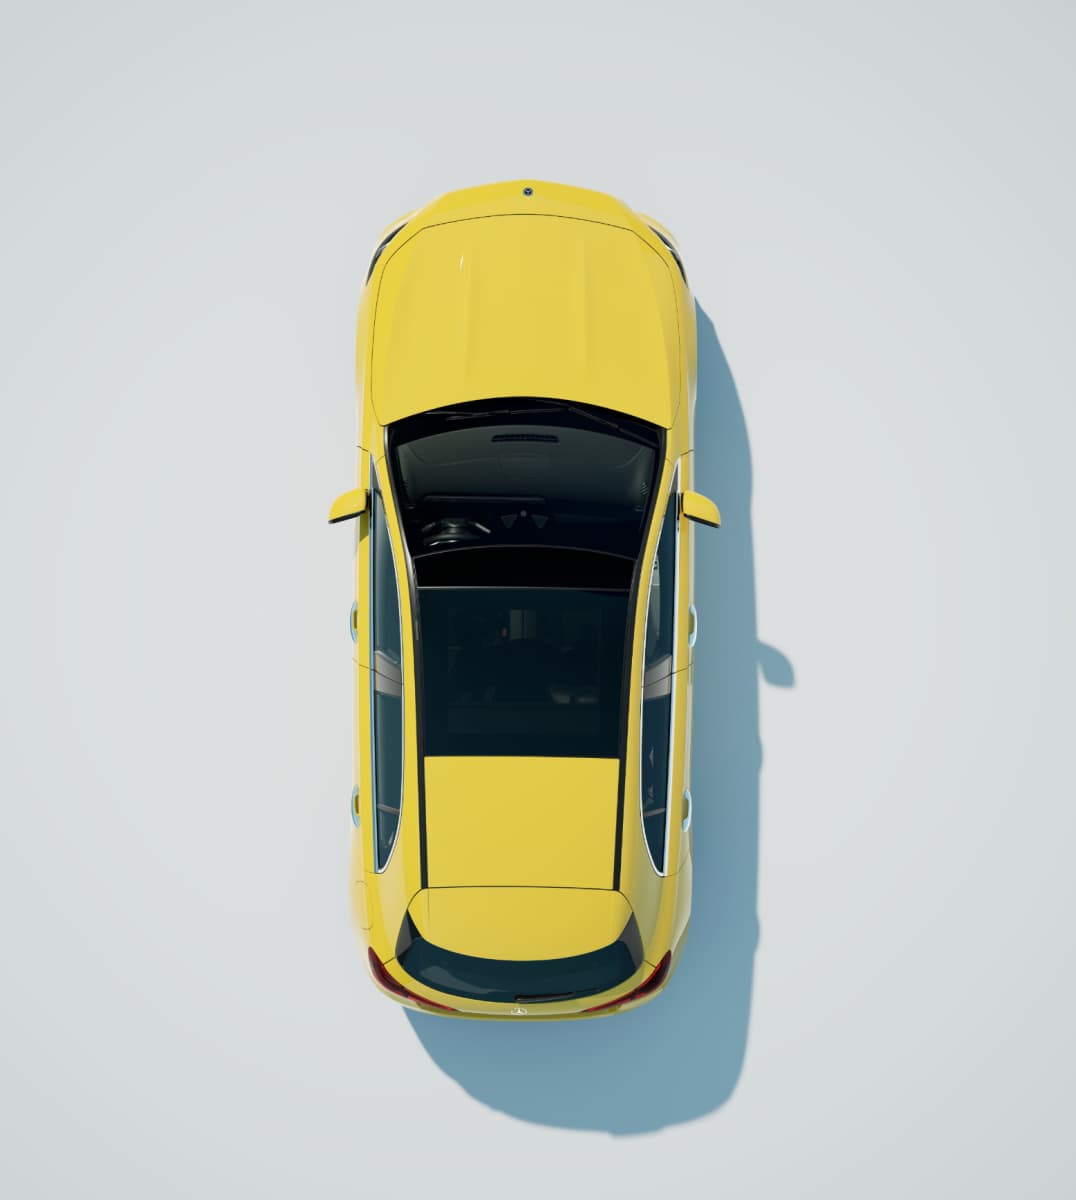 Birds-eye view of yellow Mercedes-Benz A-Class Hatchback